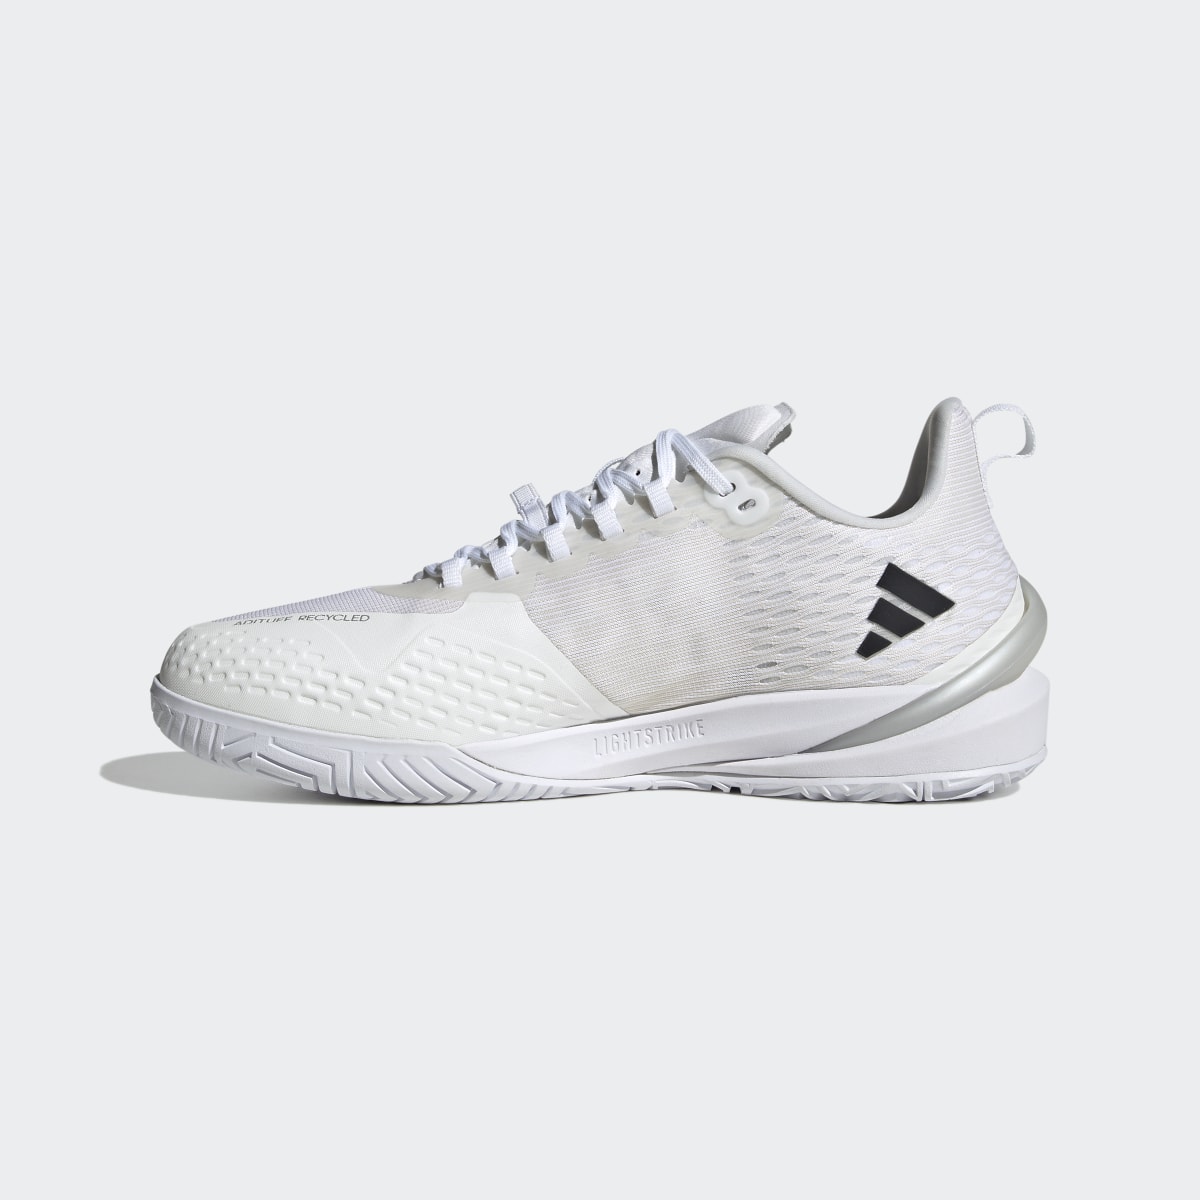 Adidas Adizero Cybersonic Tennis Shoes. 10